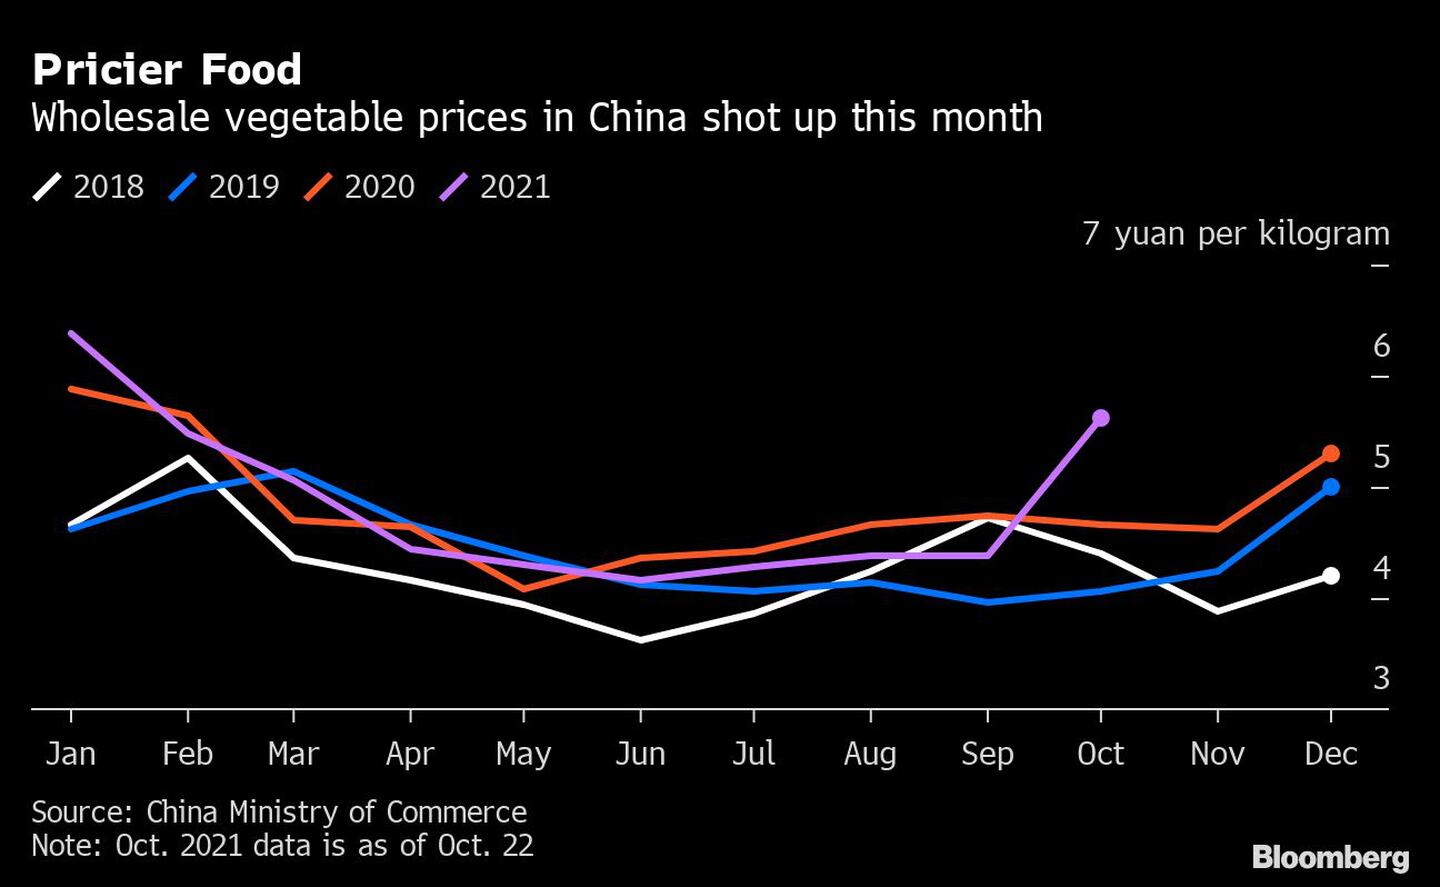 Alimentos más caros
Los precios de las verduras al por mayor en China se han disparado este mesdfd